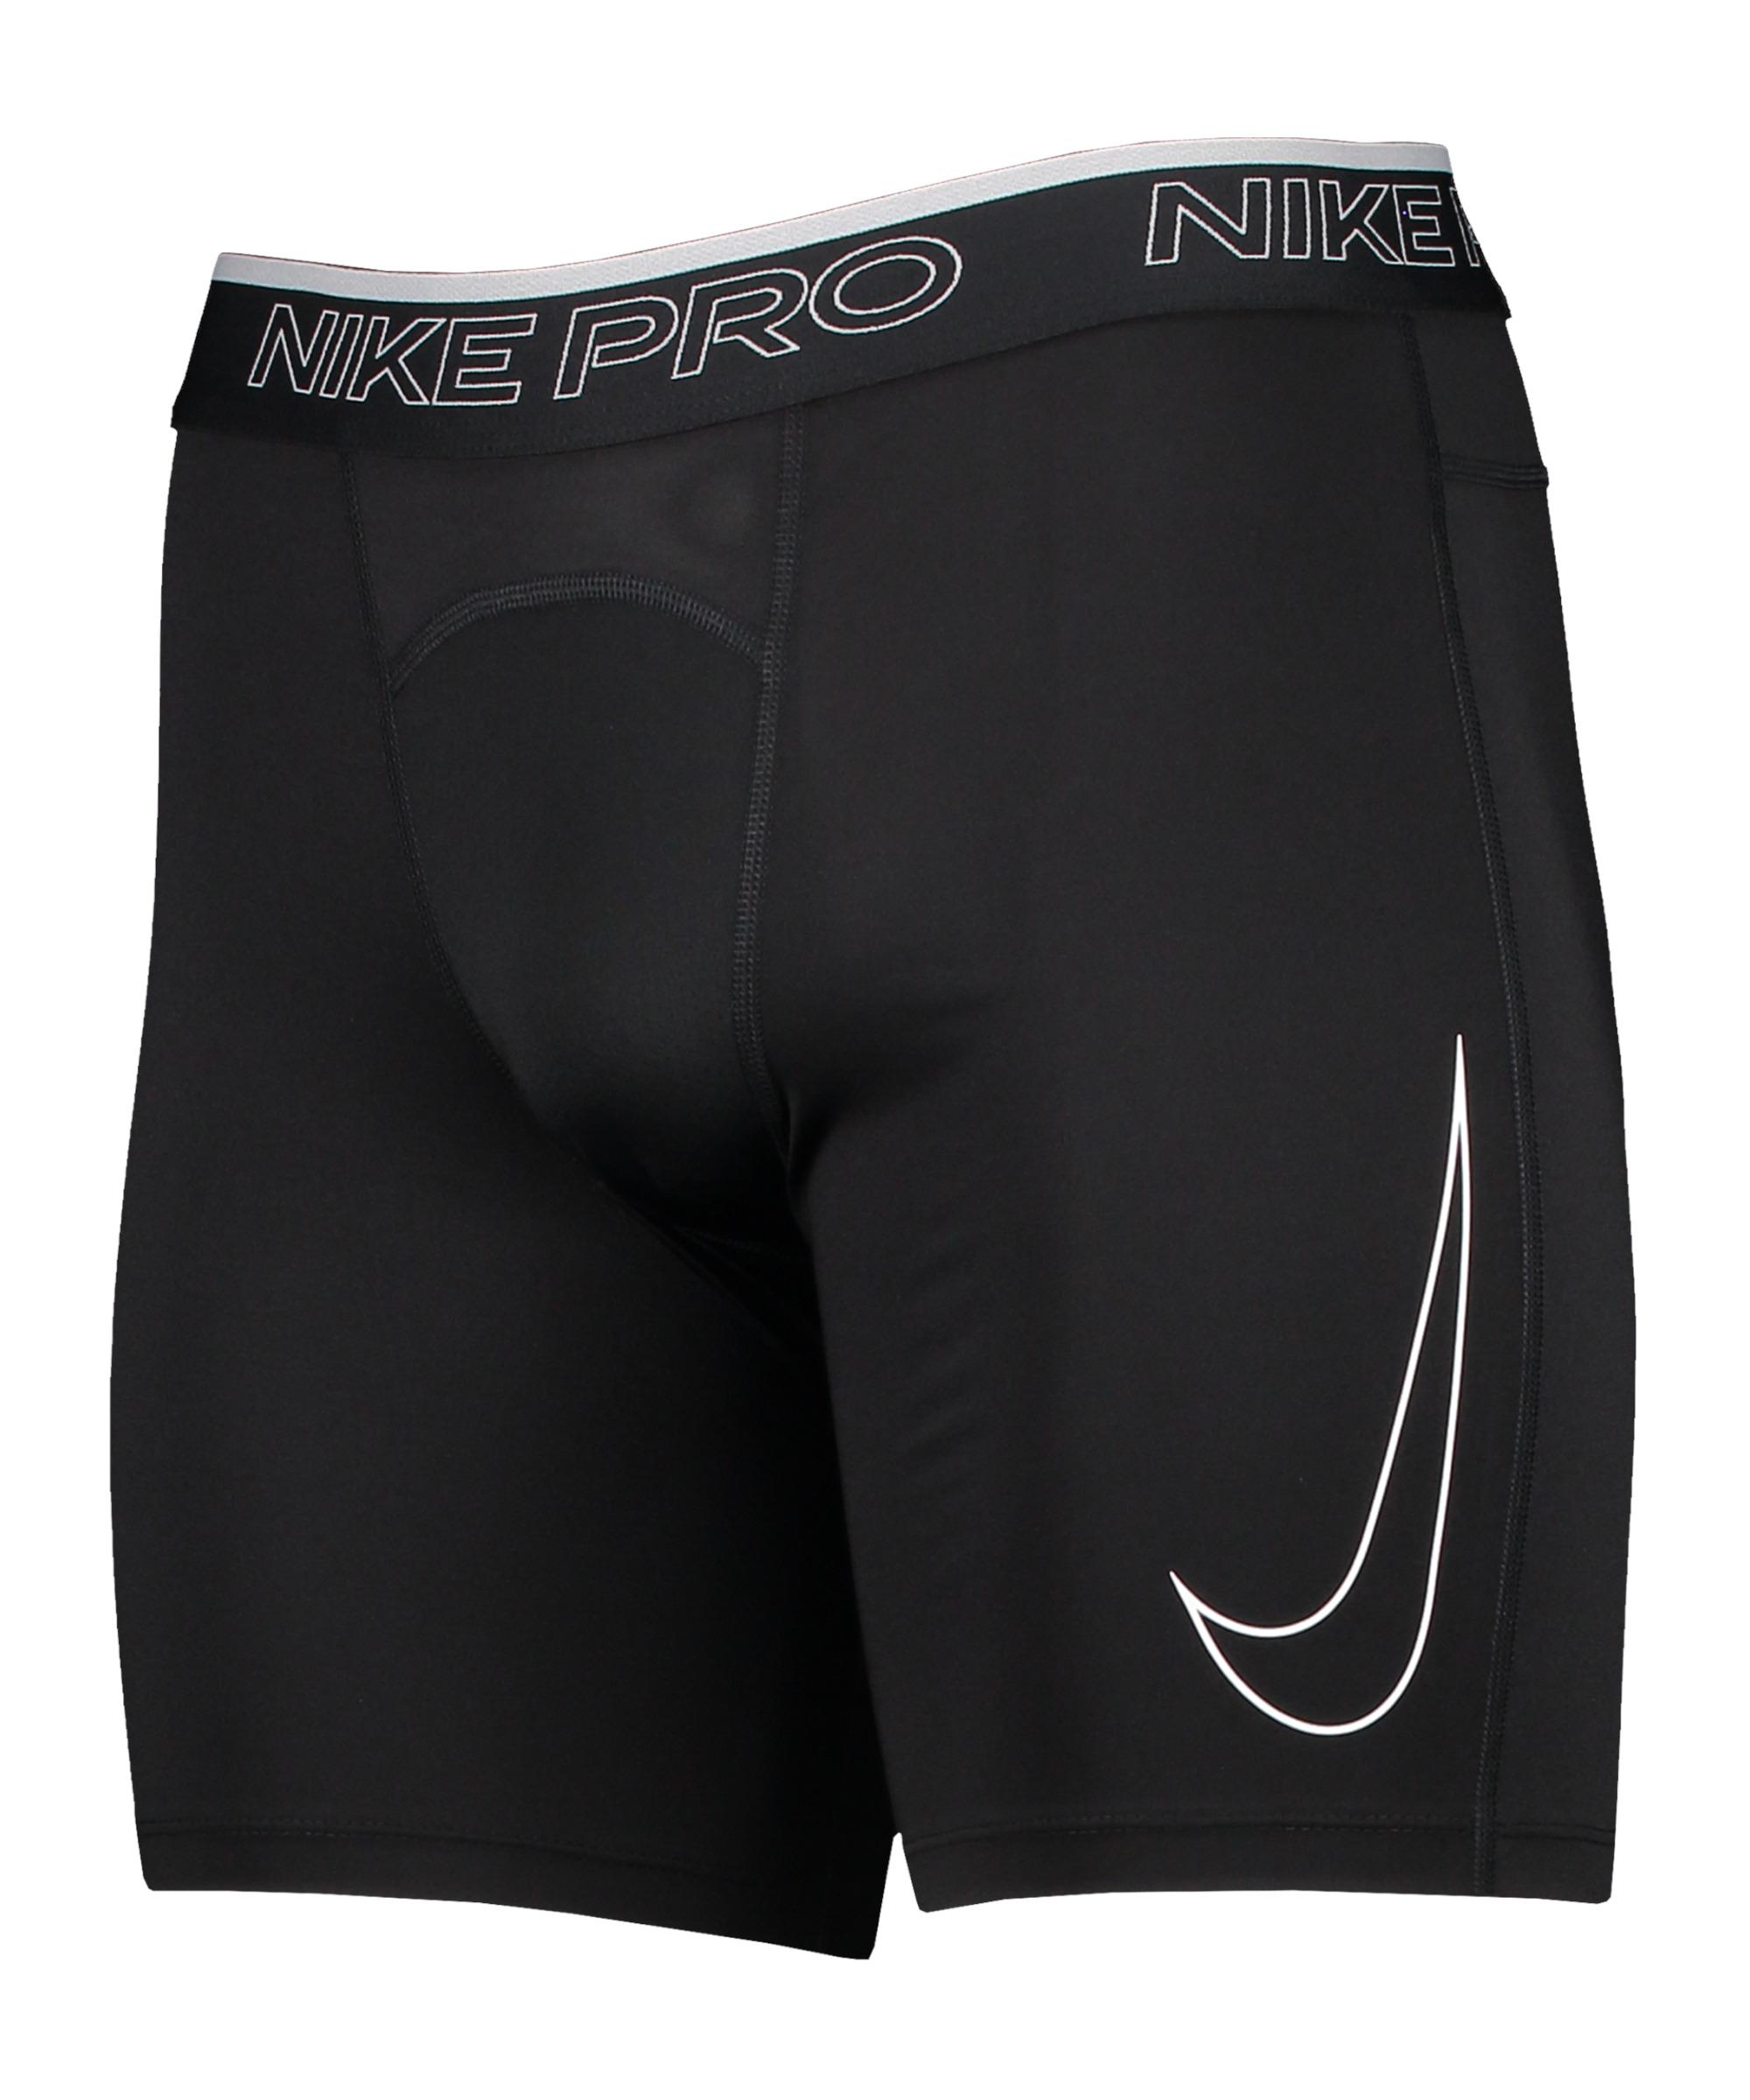 black-white Pro SportScheck kaufen von Nike Funktionsshorts Dri-Fit im Online Shop Herren